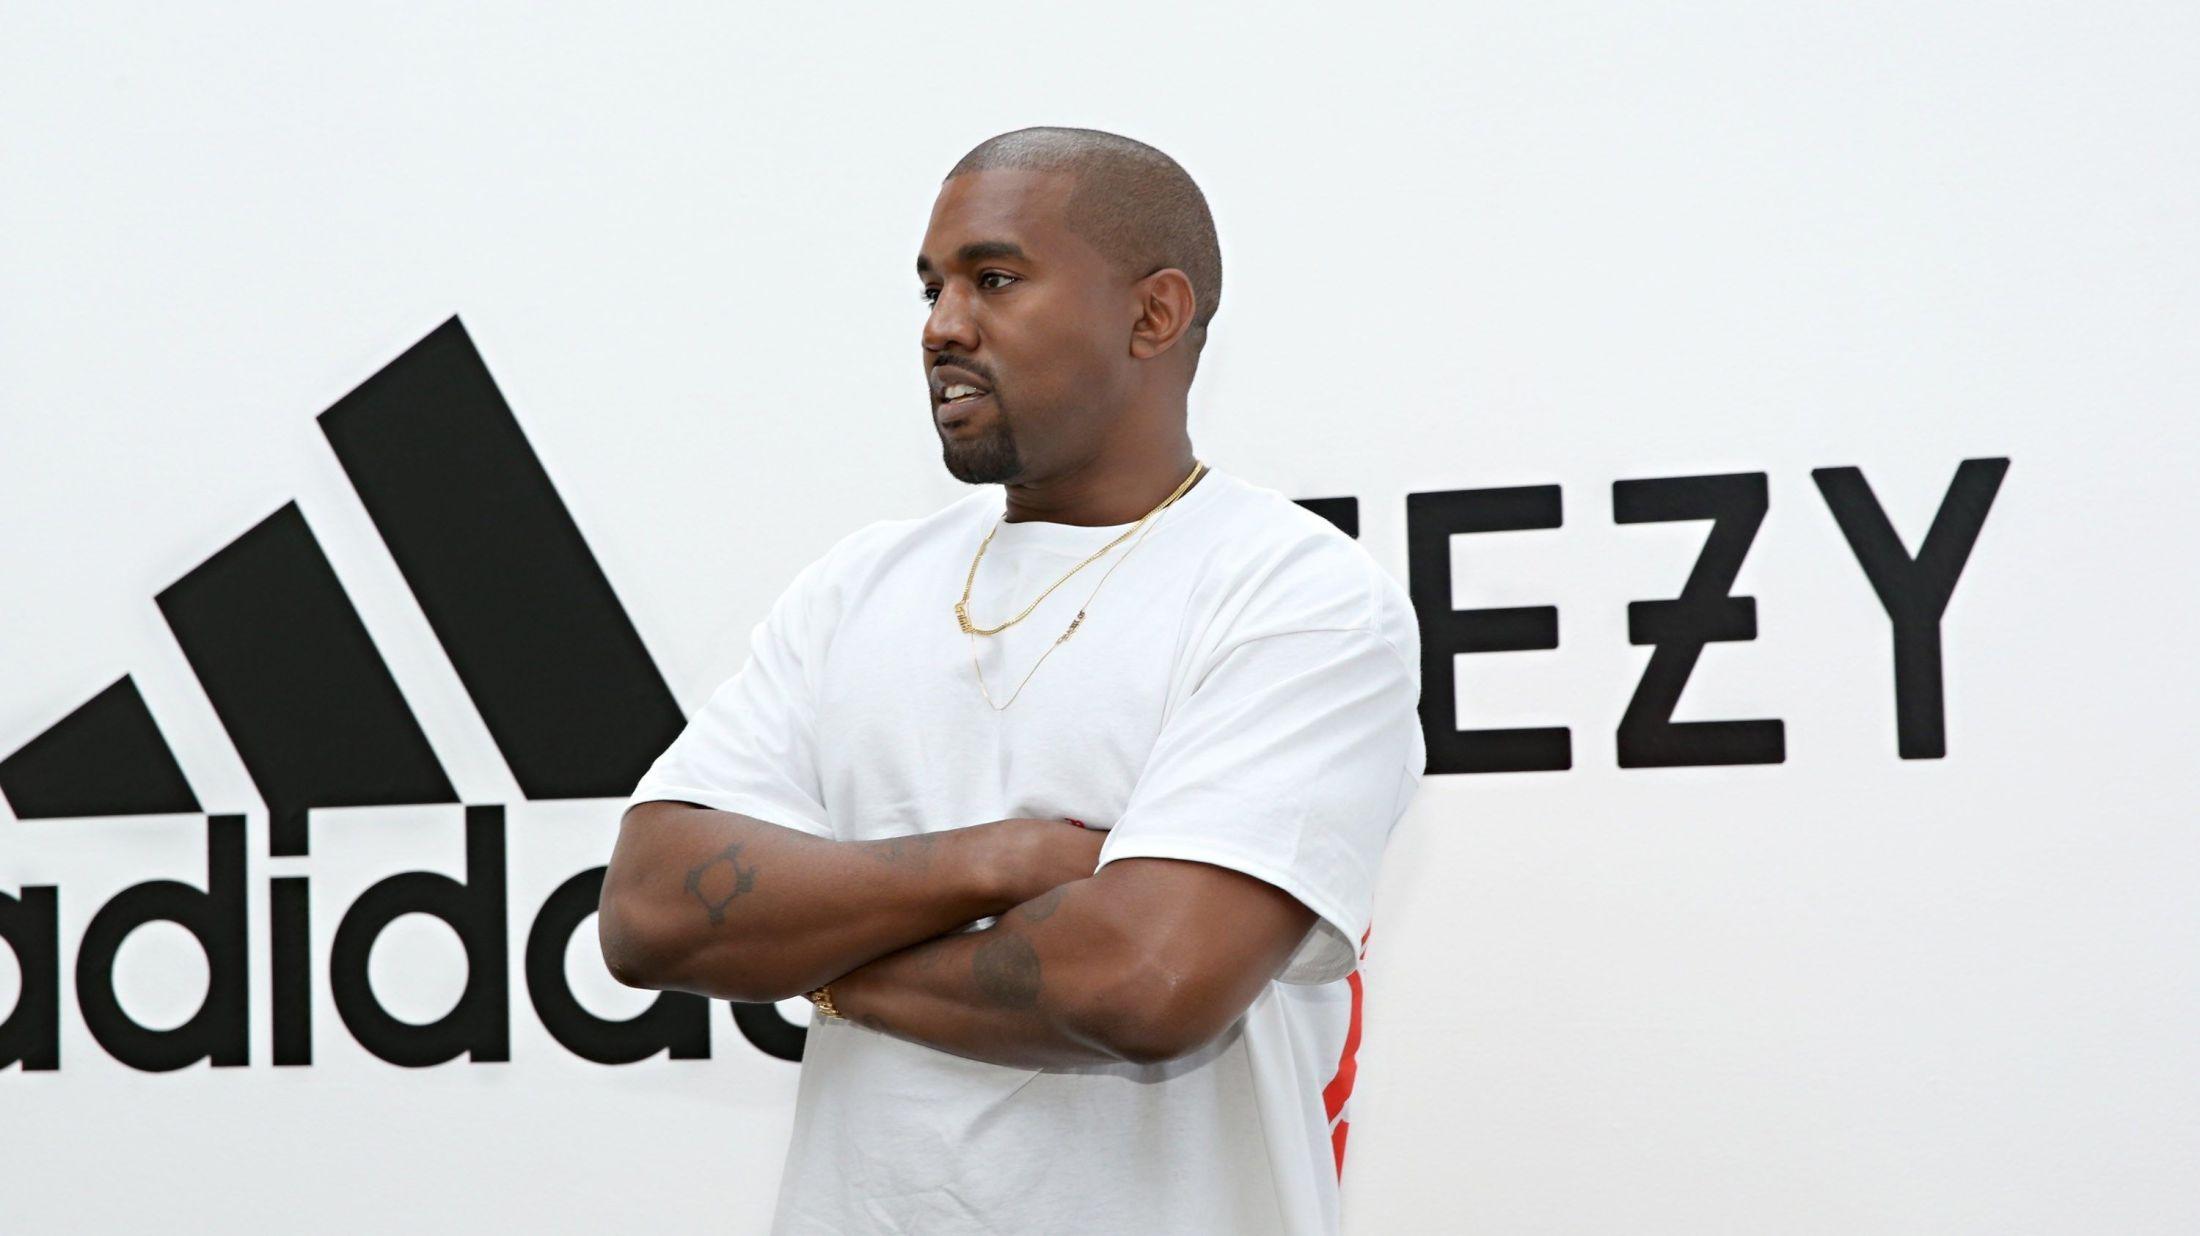 SATSER STORT: Kanye West under presentasjonen av rapperens nye avtale med Adidas. Foto: Jonathan Leibson, AFP